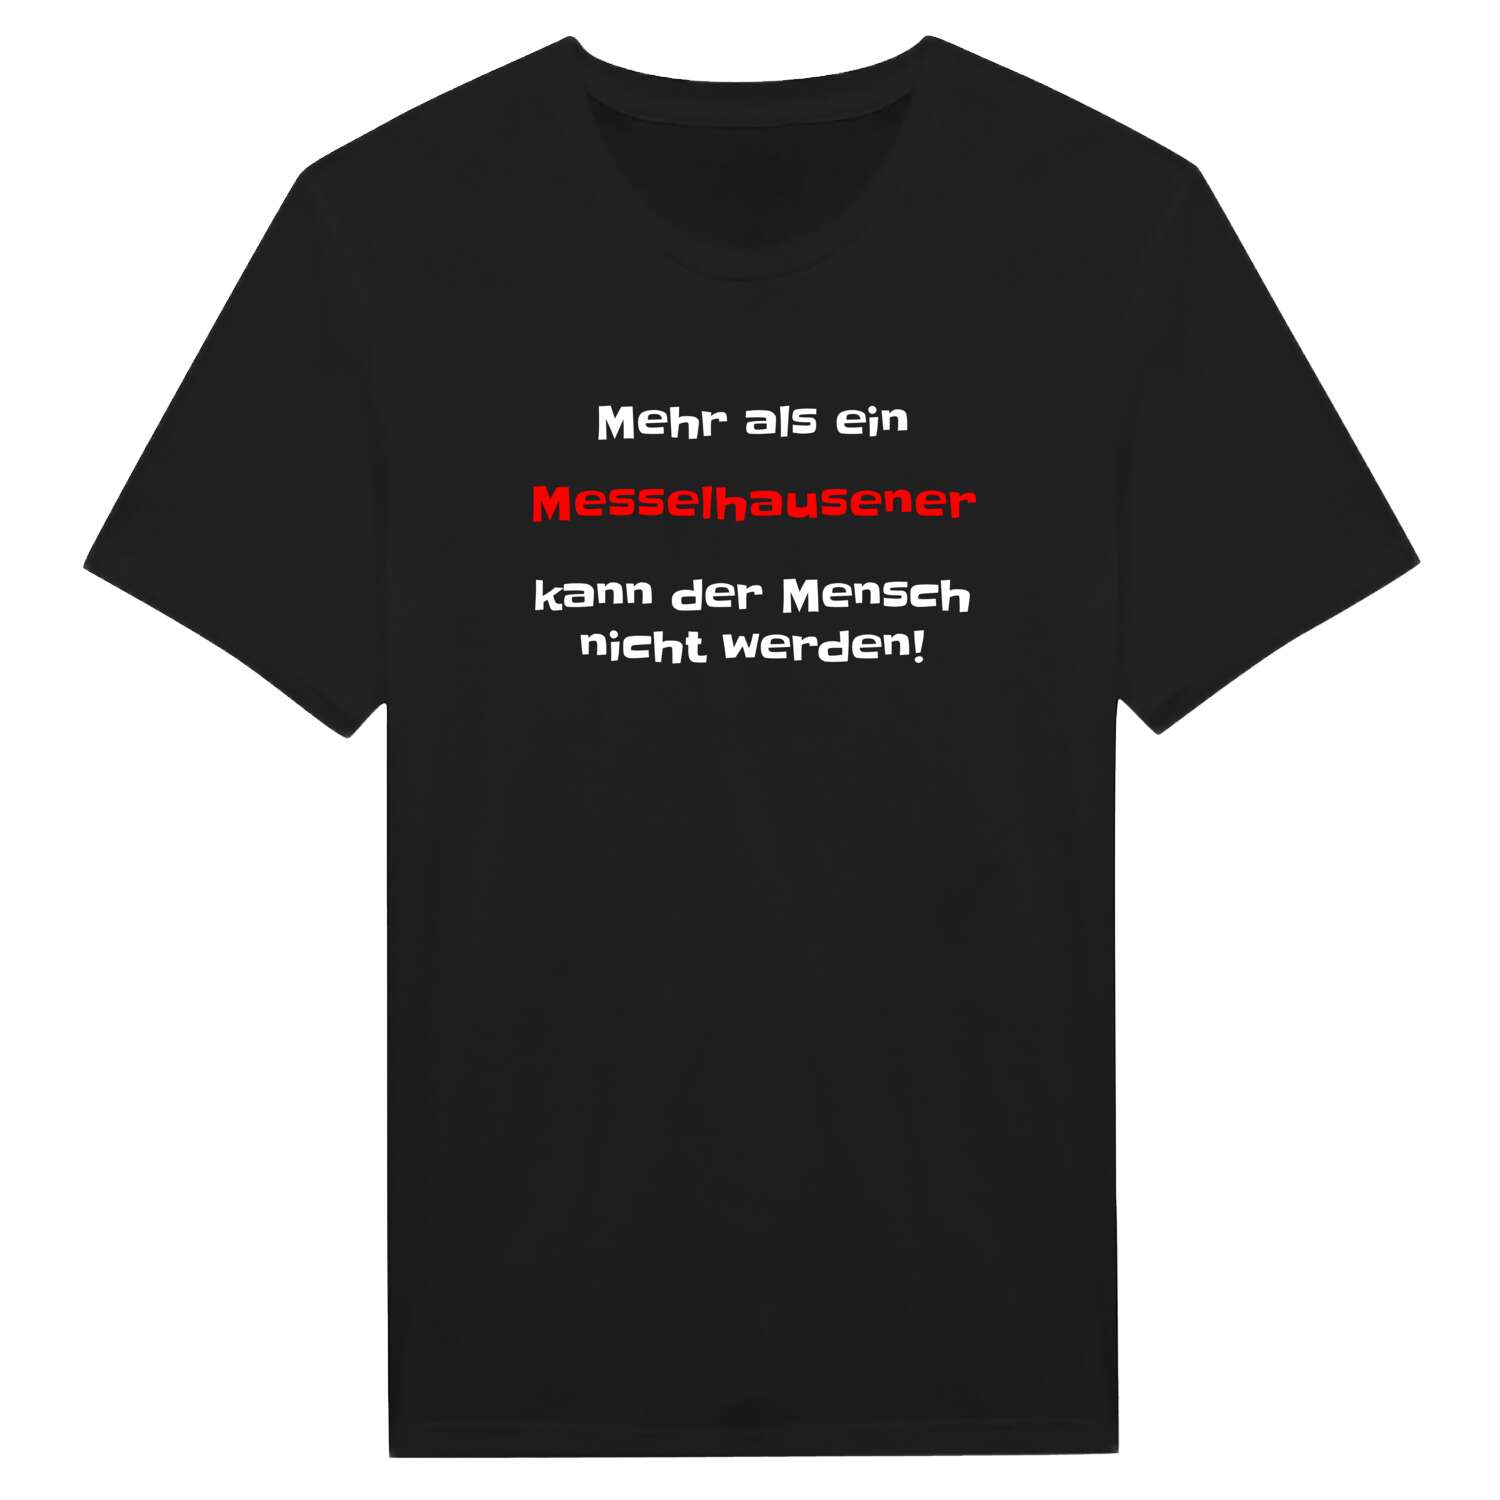 Messelhausen T-Shirt »Mehr als ein«